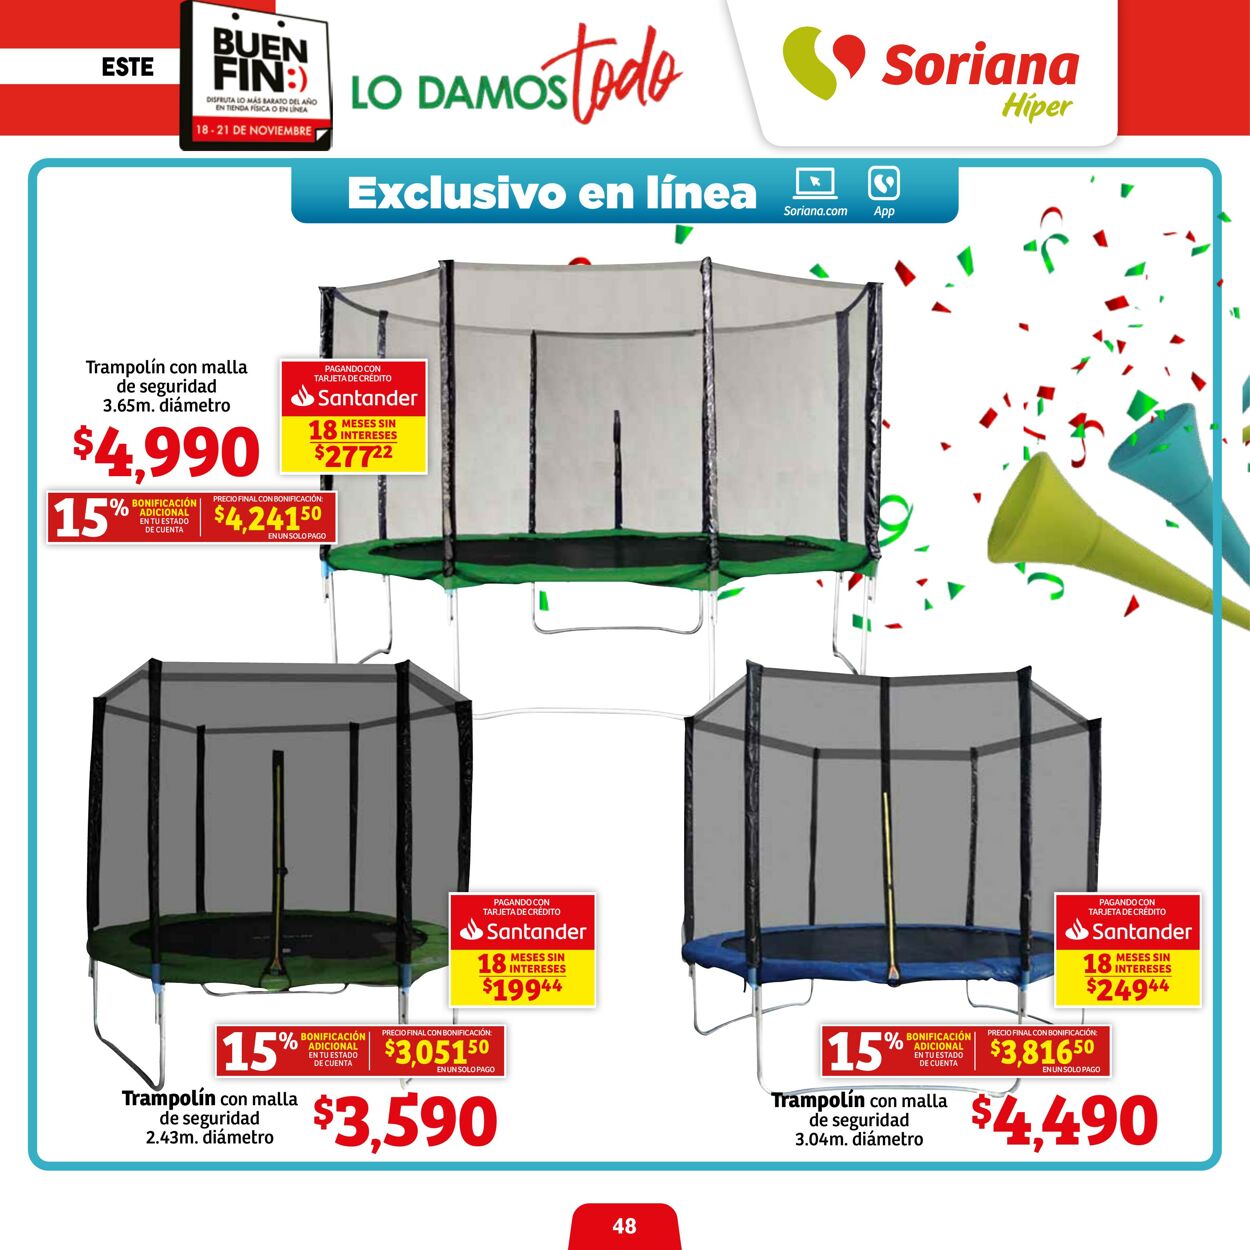 Catálogo Soriana 18.11.2022 - 21.11.2022